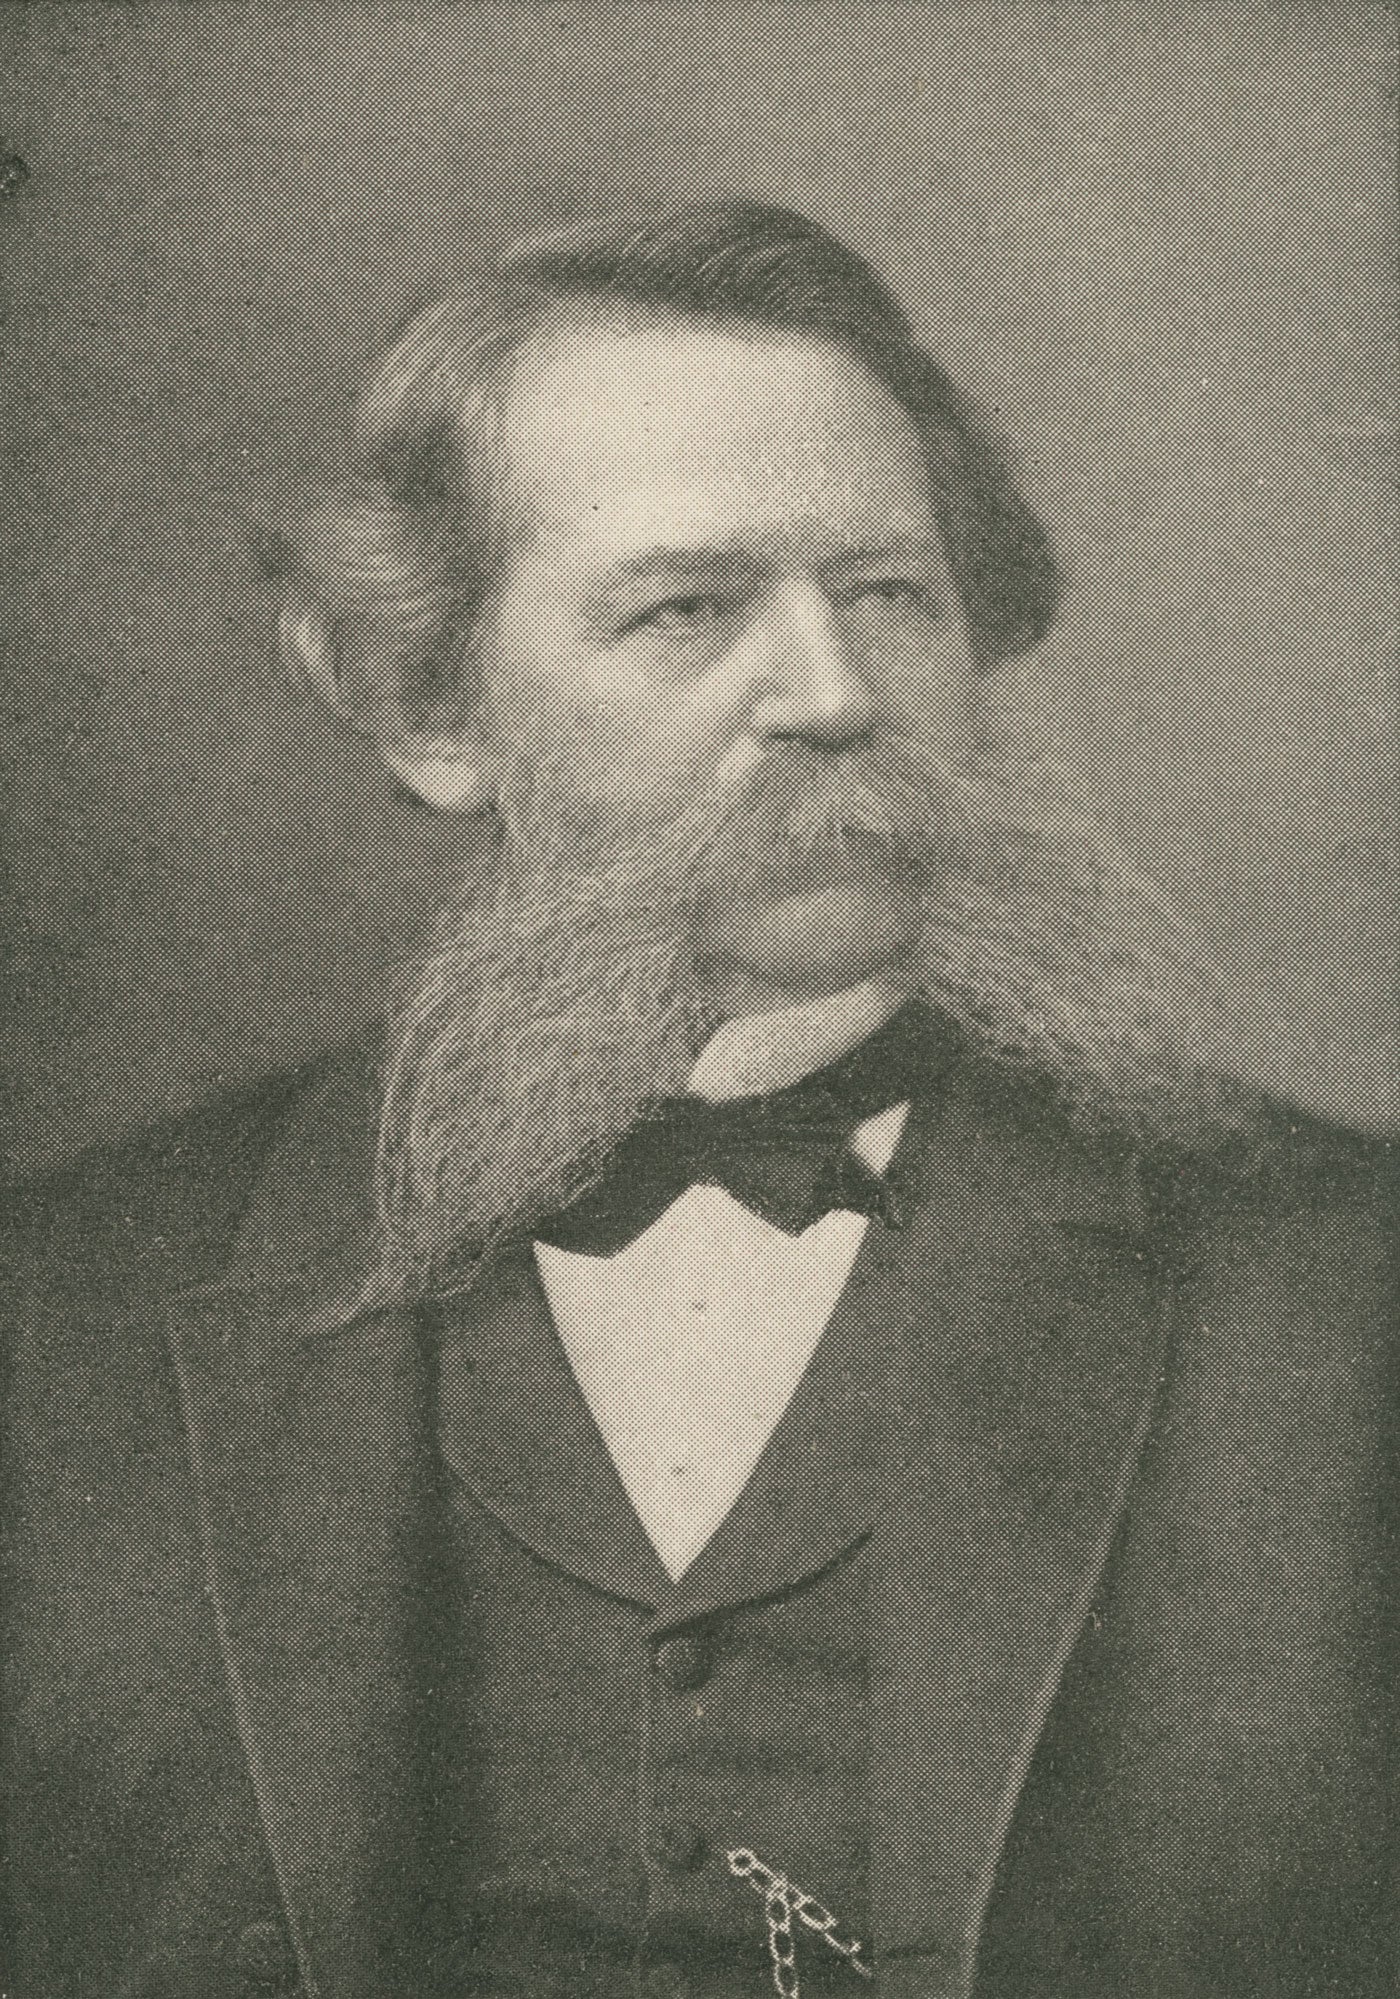 Joseph Monroe Bennett